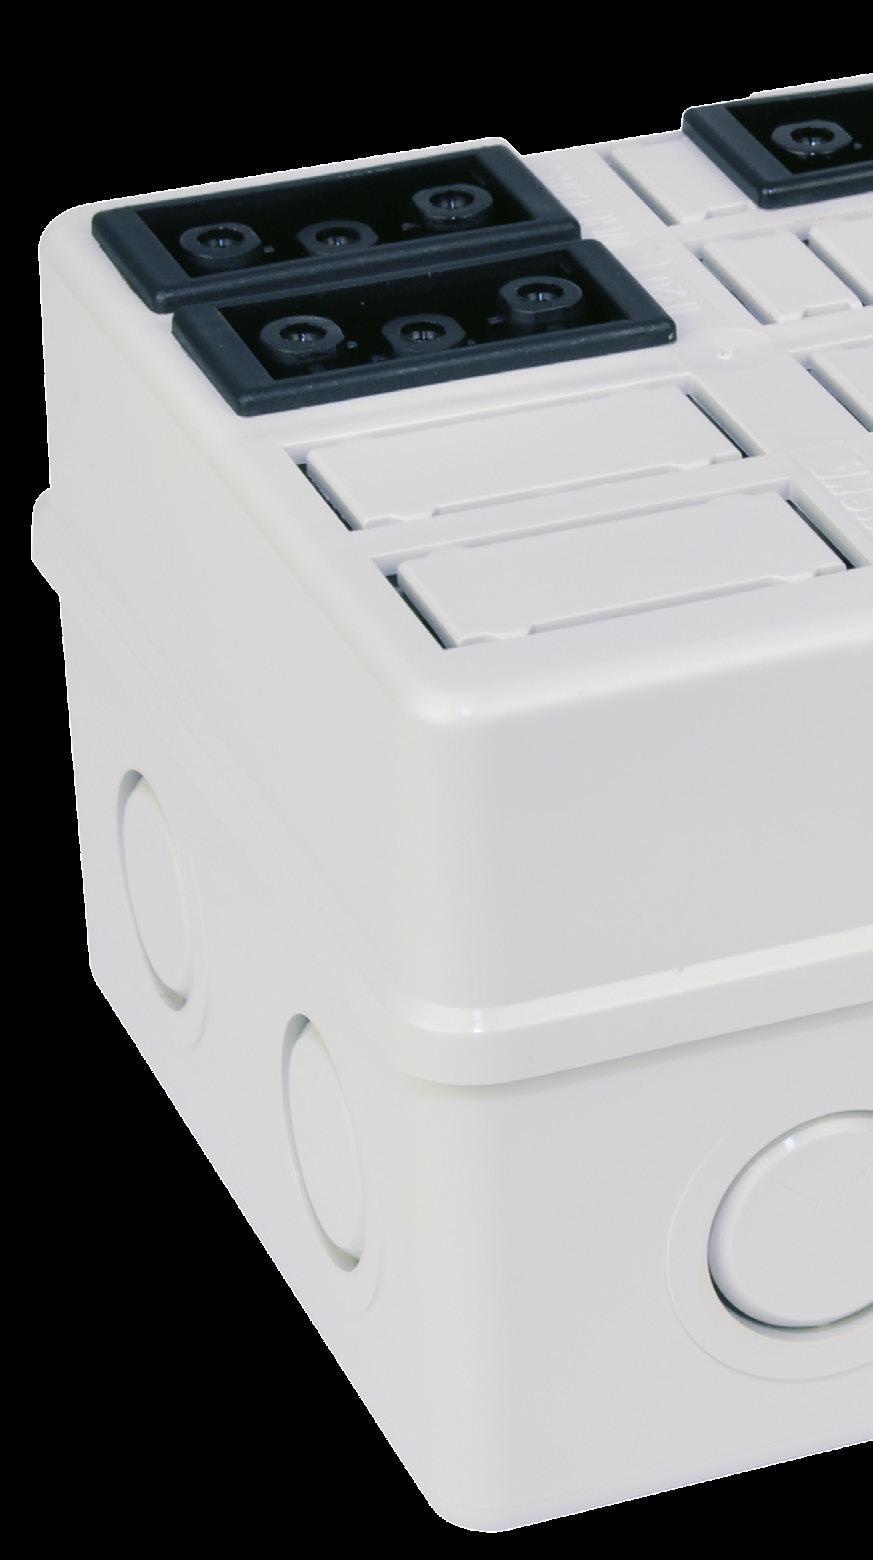 Caja de empalme WHK Conexionado rápido sin cableado: la solución plug-in para una instalación rápida en interiores Con la caja WHK, WISKA combina su competencia en el ámbito de las cajas de empalme